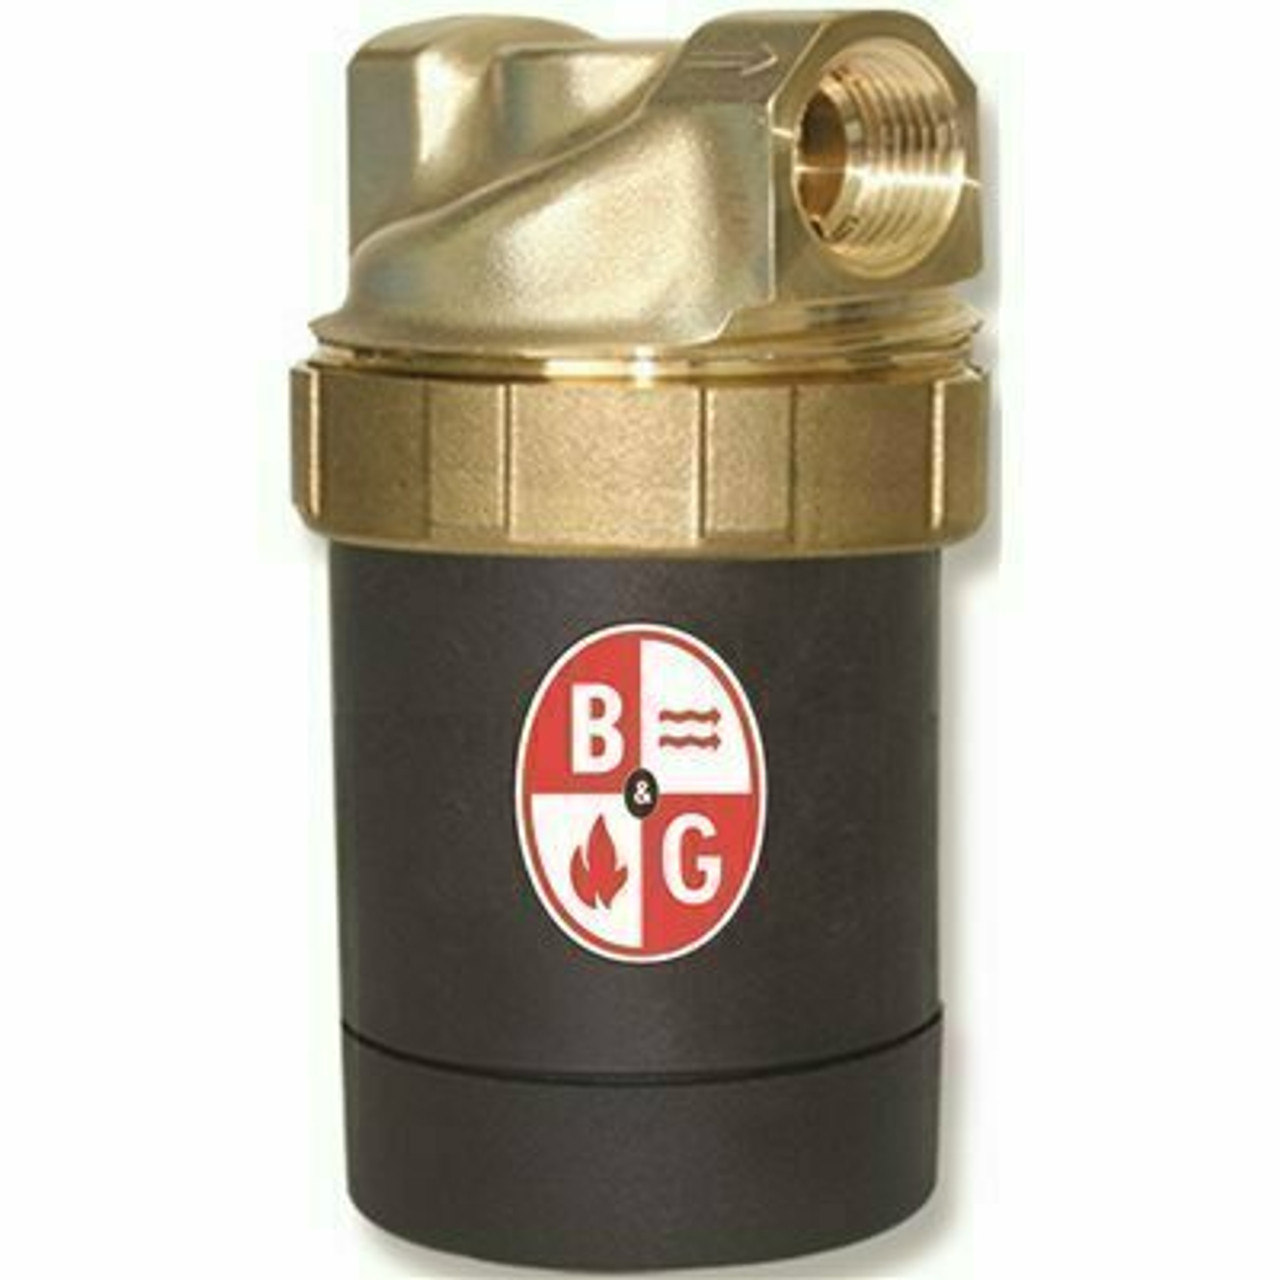 Bell & Gossett Circulator Pump Lead-Free Brass - 109246